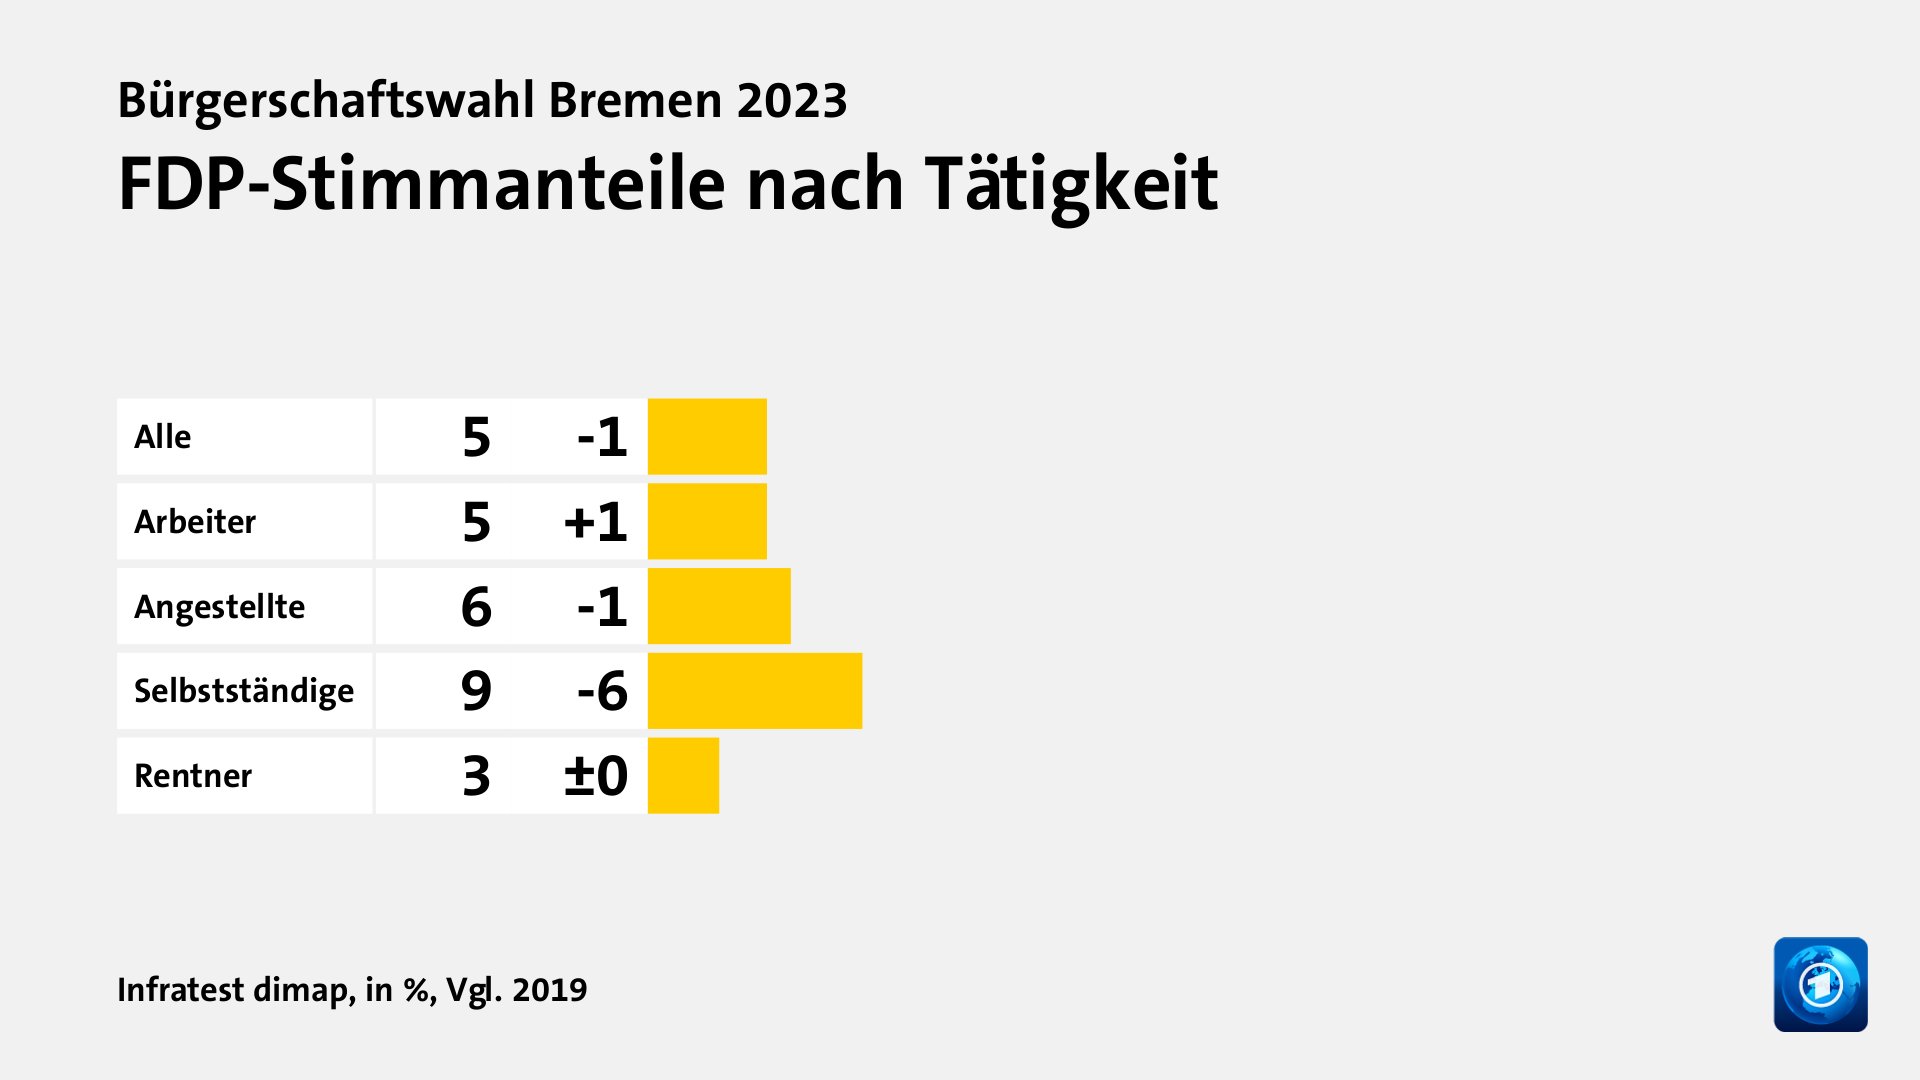 FDP-Stimmanteile nach Tätigkeit, in %, Vgl. 2019: Alle 5, Arbeiter 5, Angestellte 6, Selbstständige 9, Rentner 3, Quelle: Infratest dimap